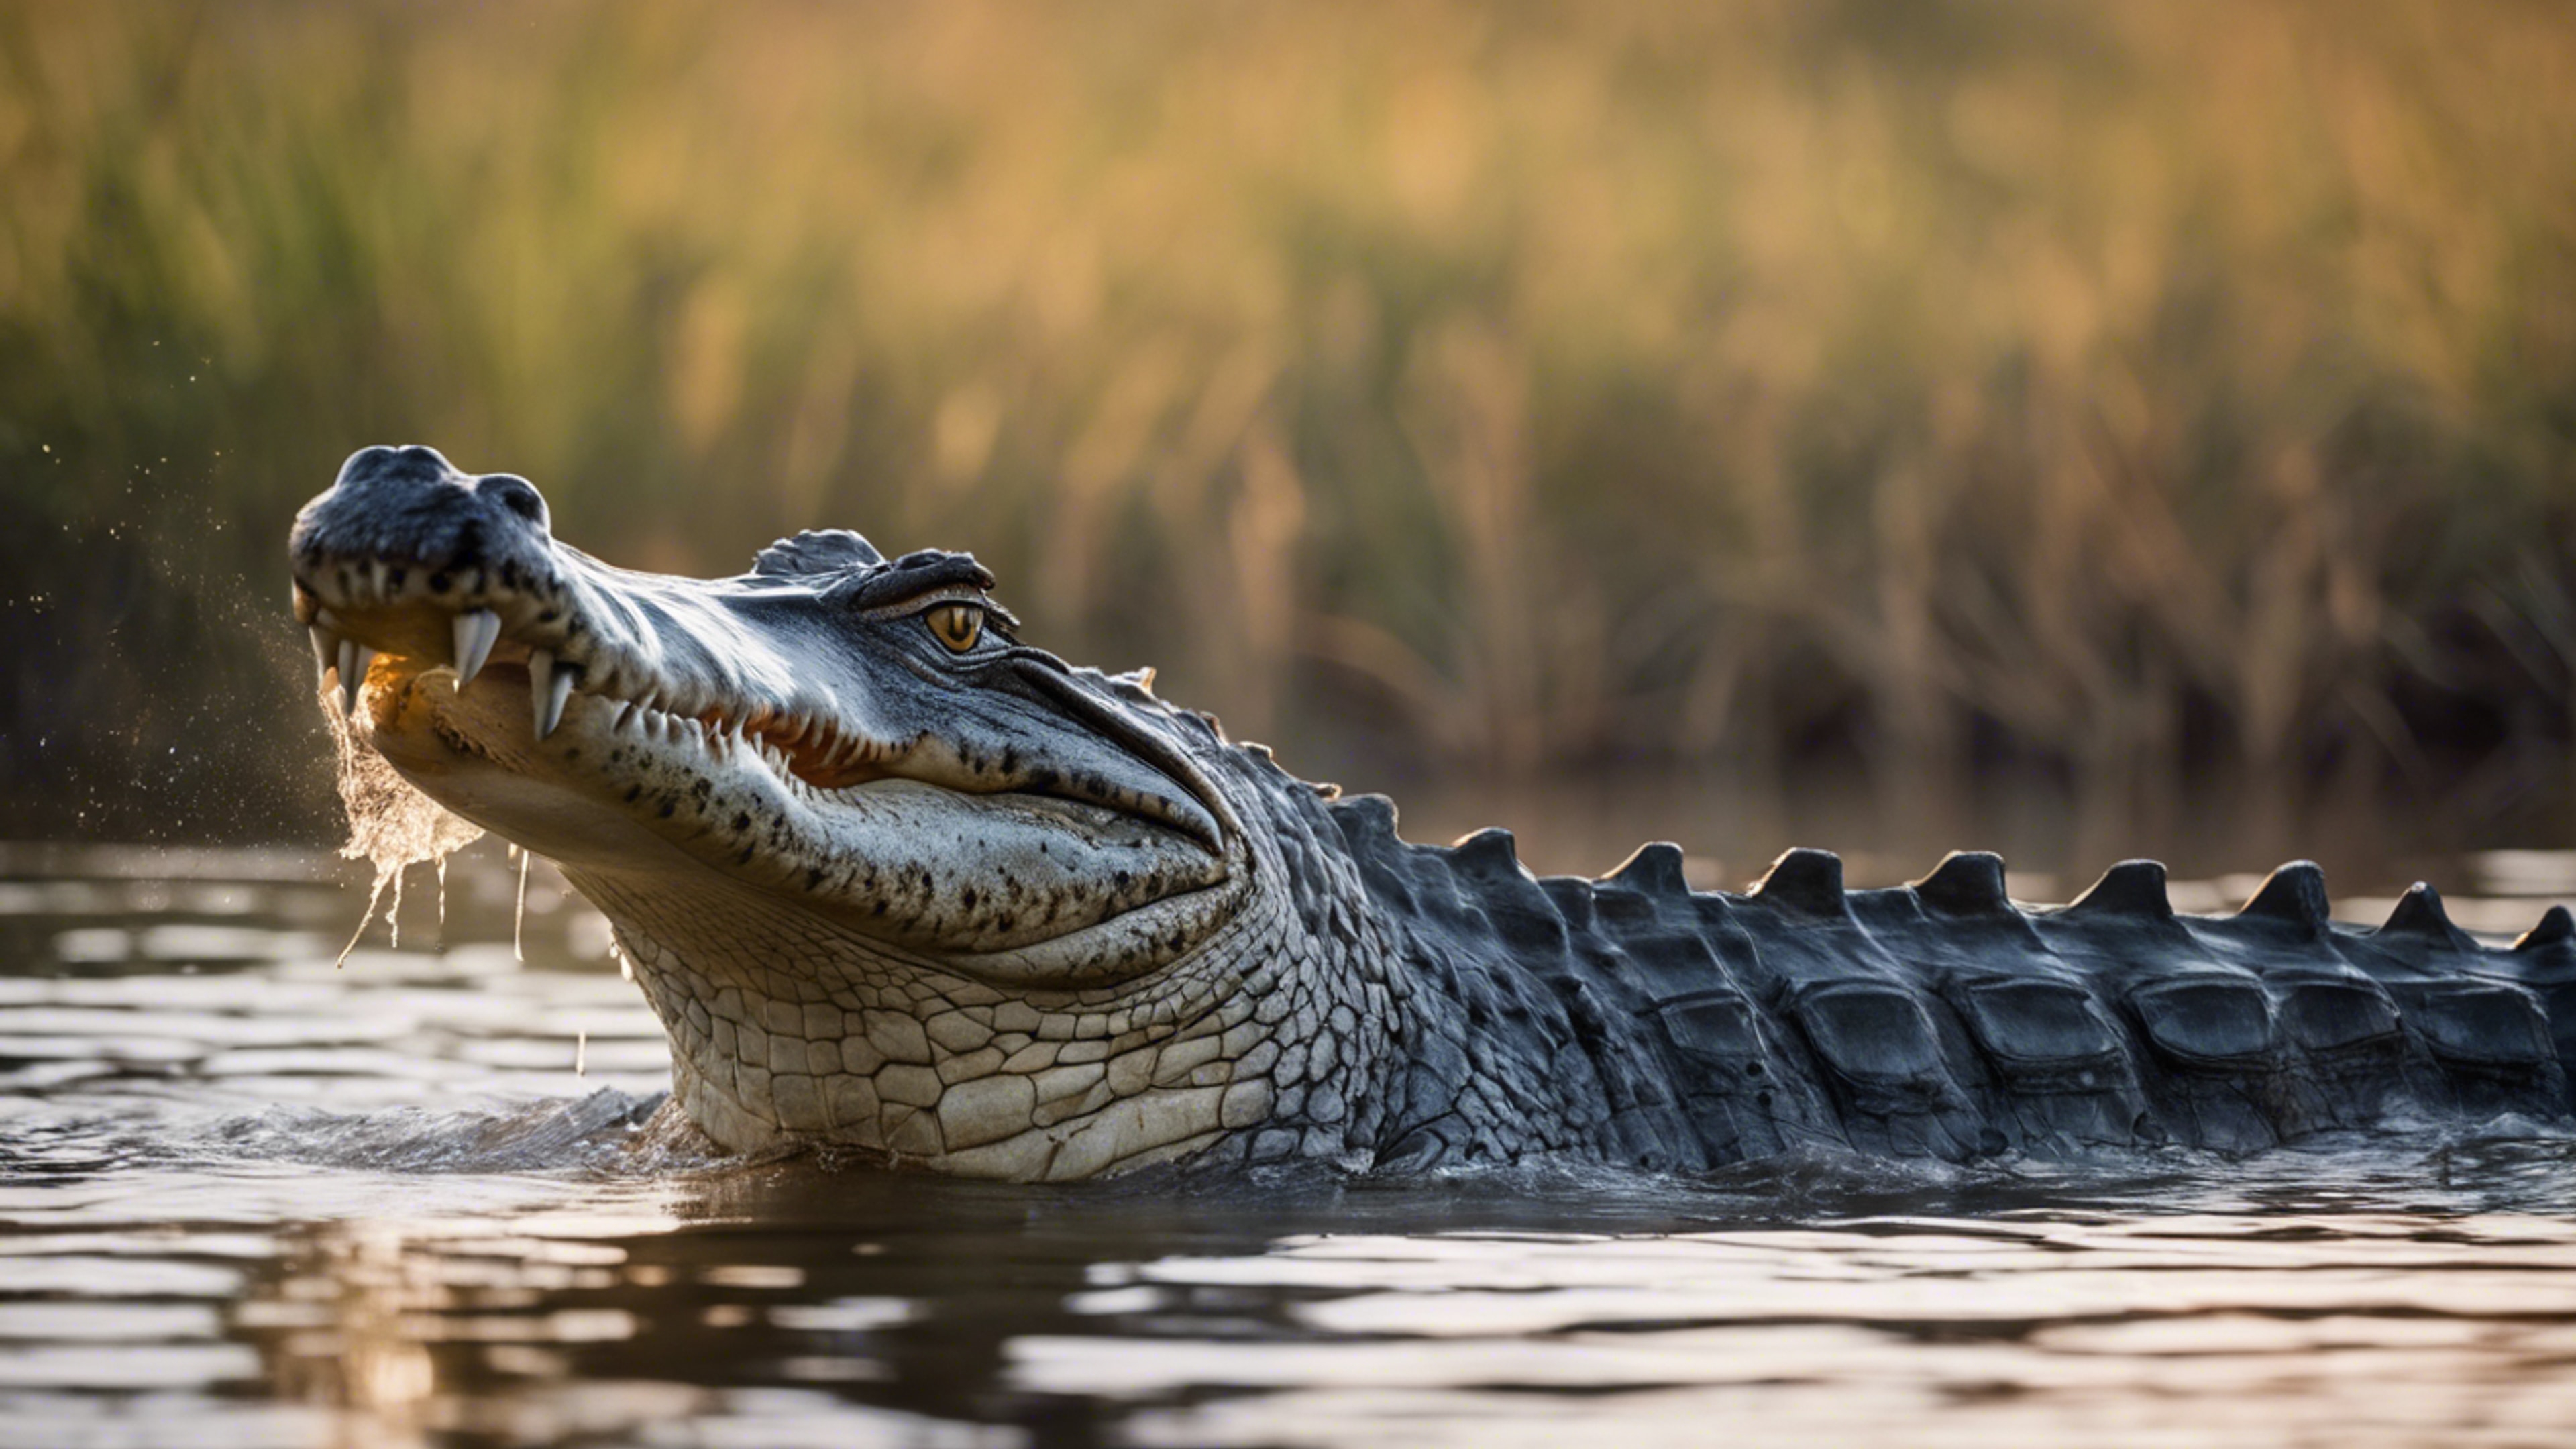 A glorious scene of a crocodile in the heart of the Okavango Delta. Tapeta[926204686e5b483ca4a6]